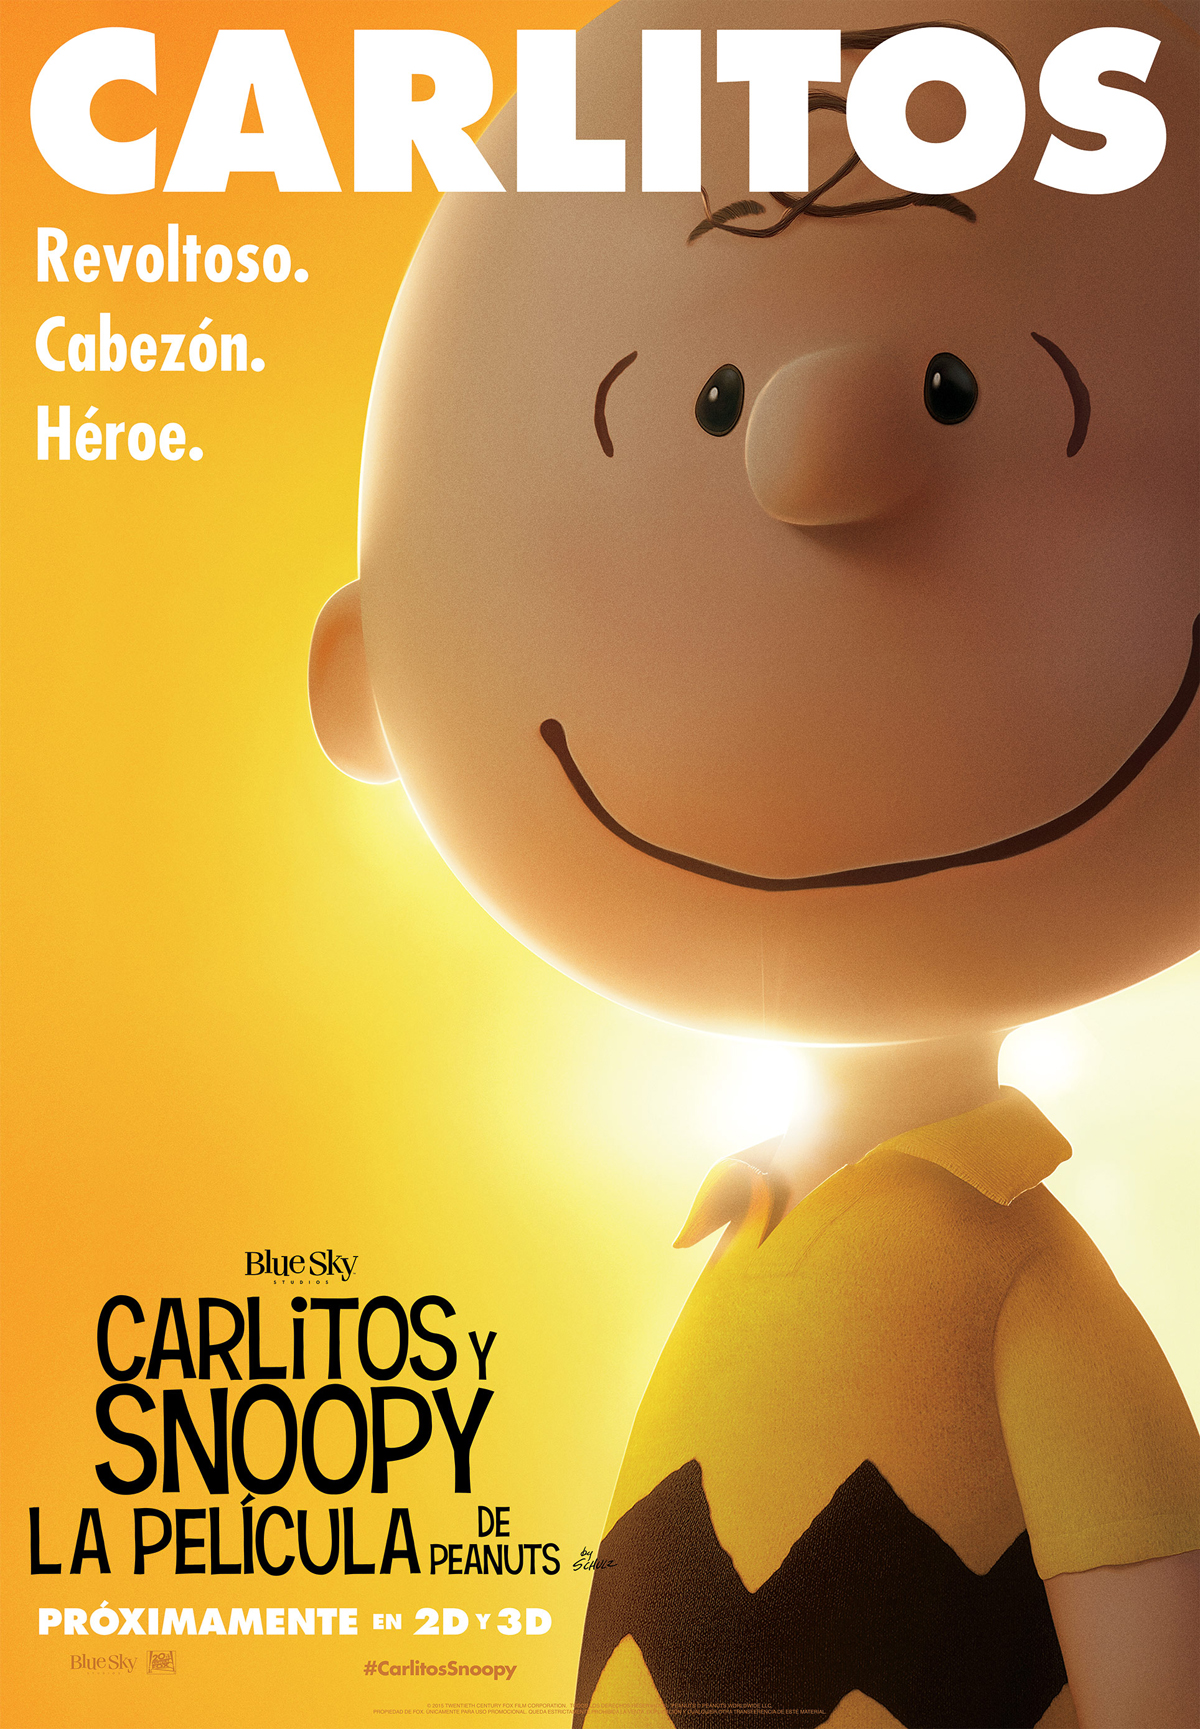 Cartel De La Pel Cula Carlitos Y Snoopy La Pel Cula De Peanuts Foto Por Un Total De